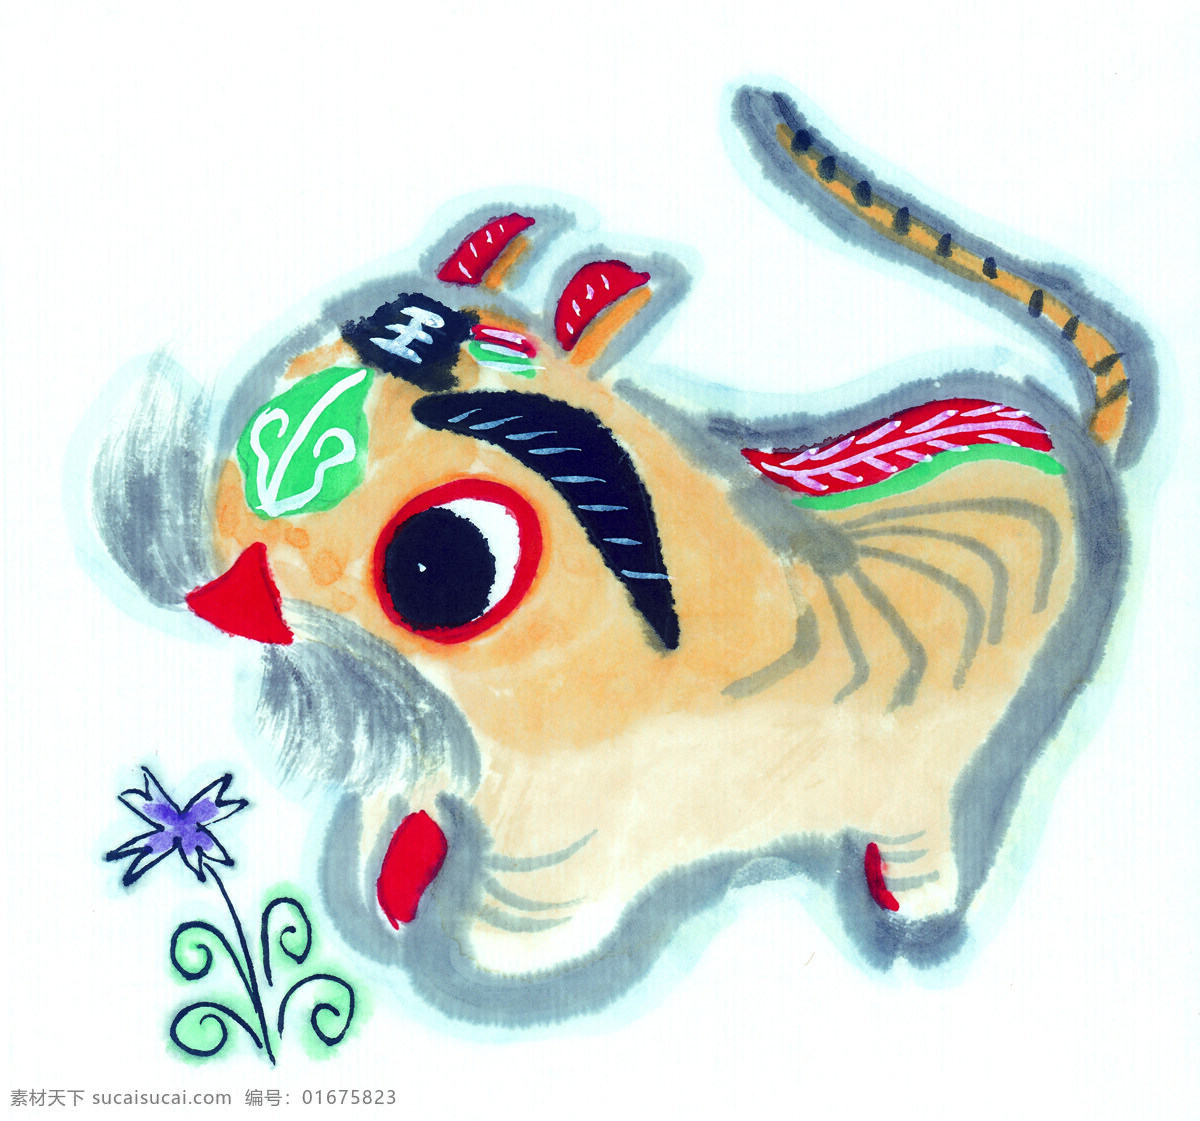 中国国画篇 虎 国画 丹青 水墨 花 中国国画篇猫 文化艺术 绘画书法